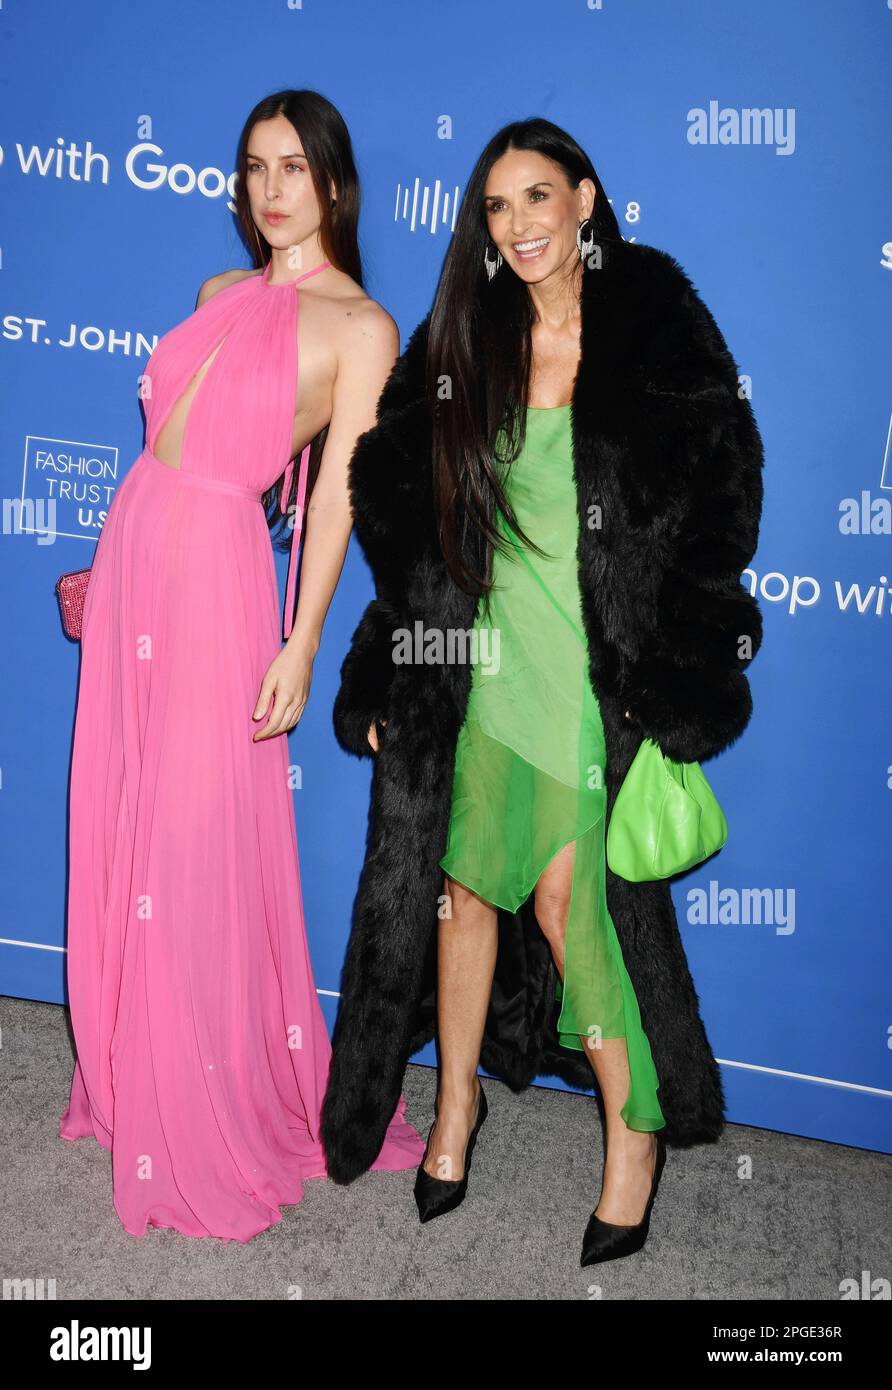 LOS ANGELES, CALIFORNIA - 21 MARZO: (L-R) Scout LaRue Willis e Demi Moore partecipano ai Fashion Trust US Awards presso Goya Studios il 21 marzo 2023 a lo Foto Stock